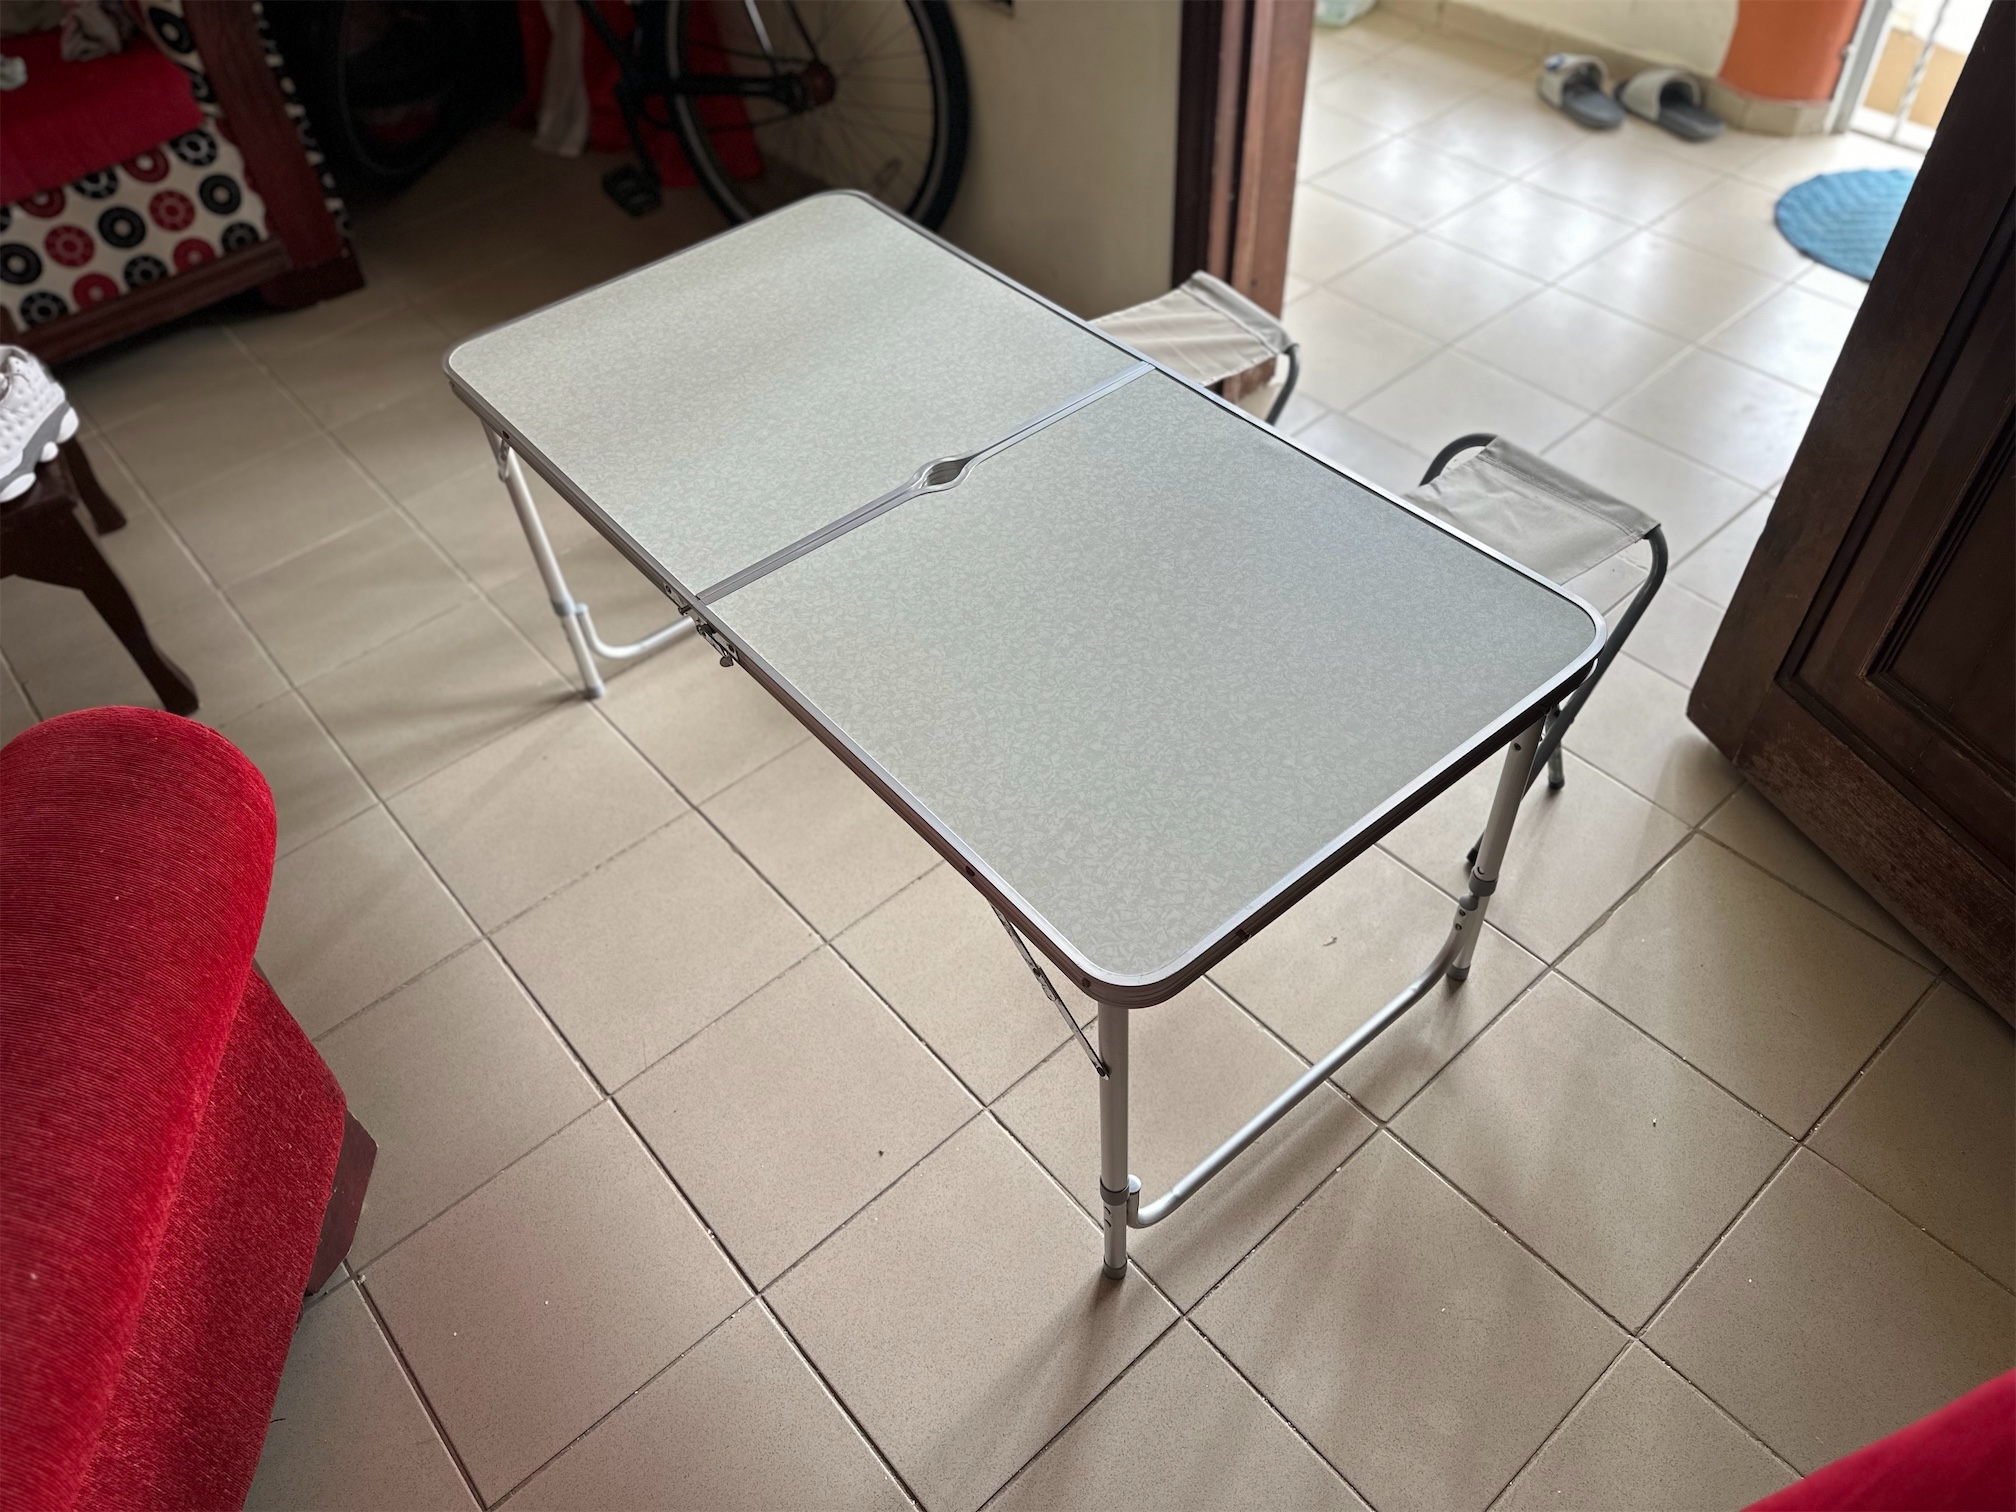 herramientas, jardines y exterior - Juego de mesa plegable para el exterior con 4 sillas blanquito super resistente. 3